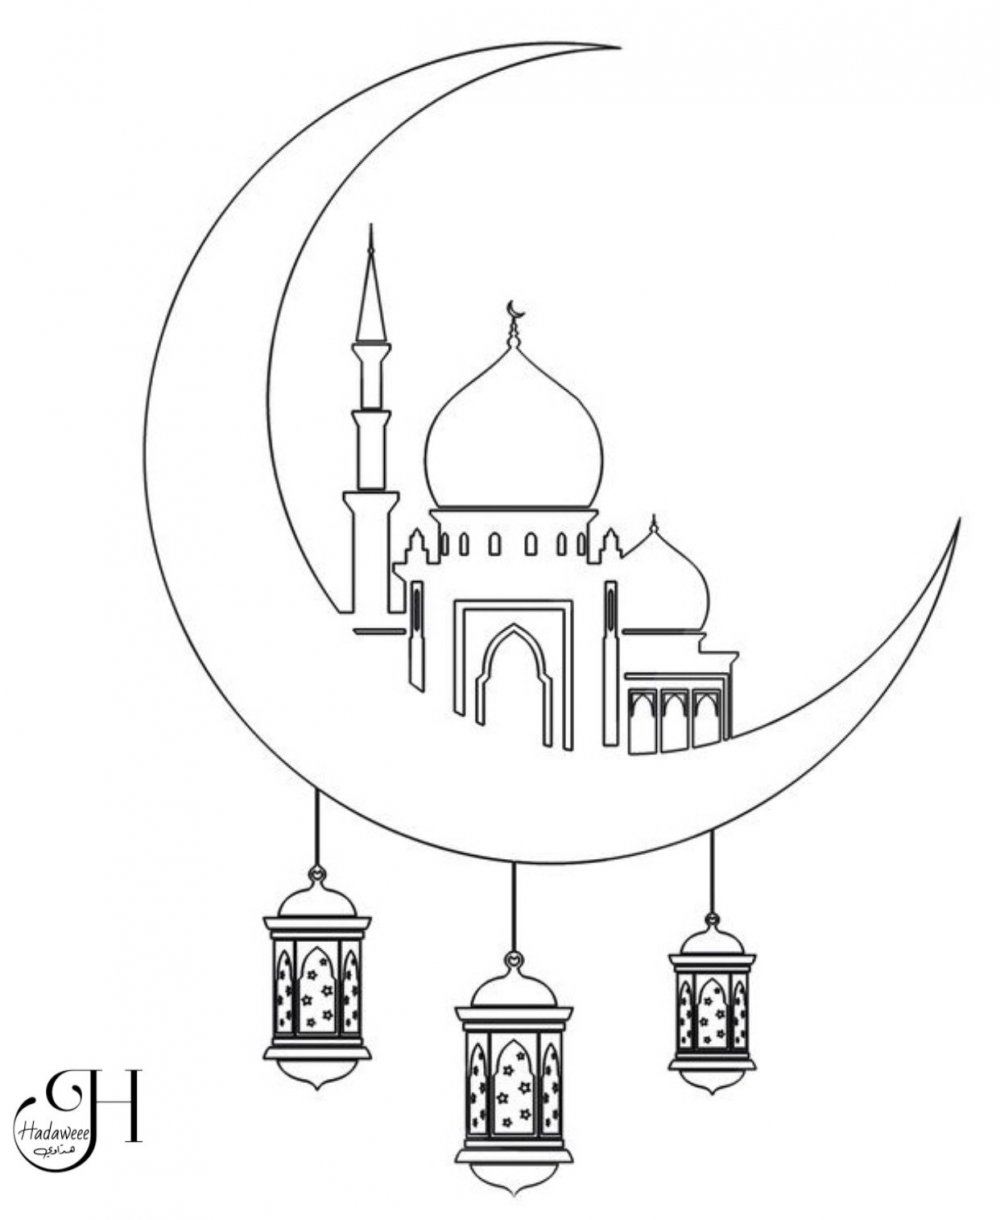 Мечеть сердце Чечни рисунок